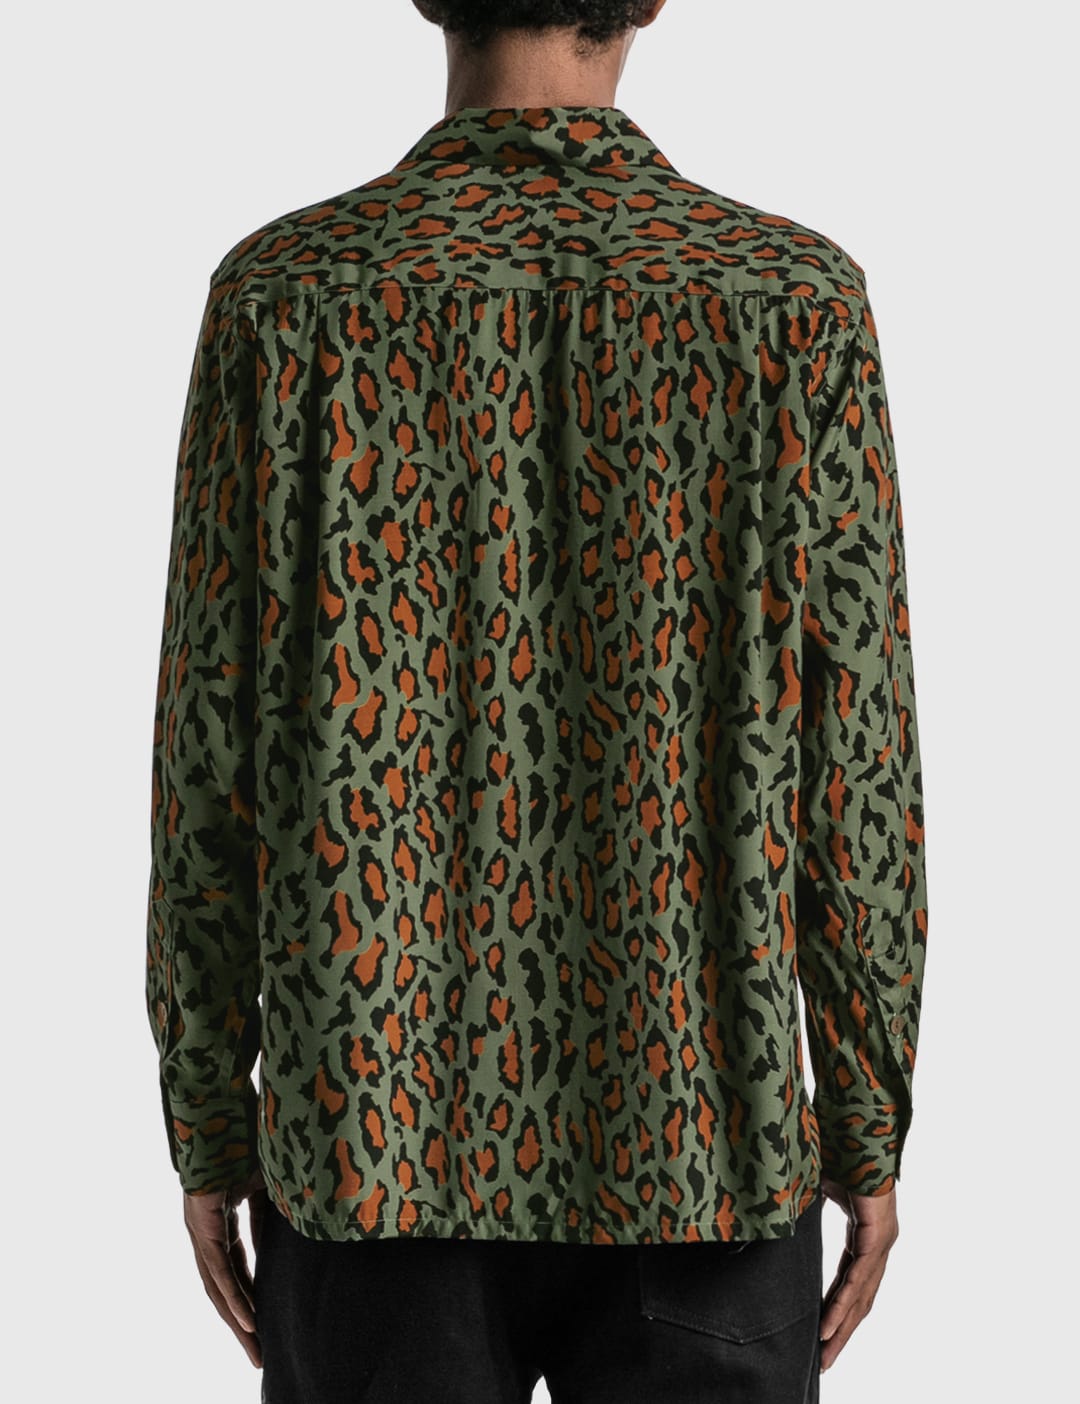 Leopard Open Collar Shirt